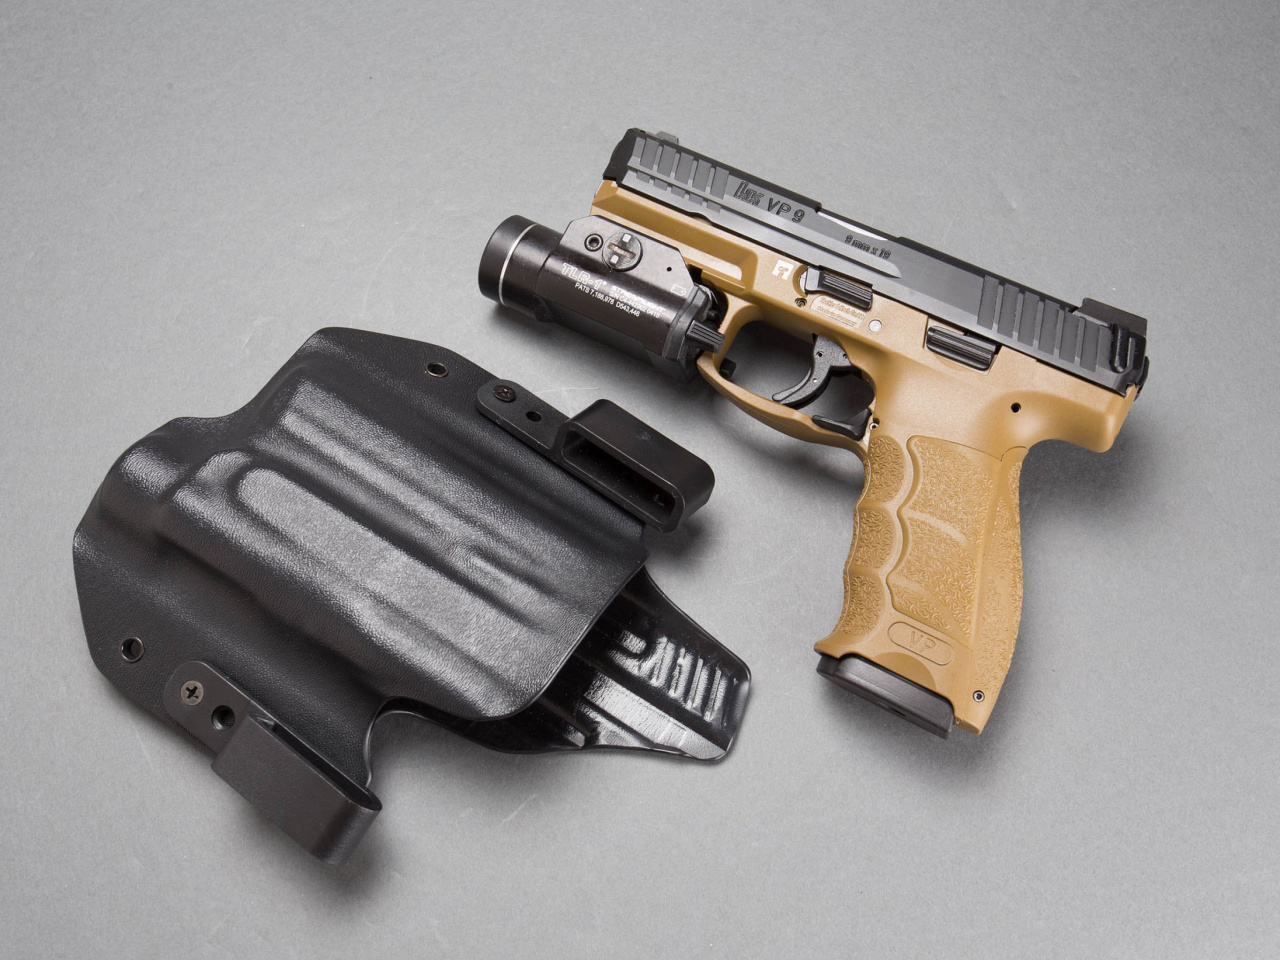 Das Pistols Heckler & Koch 9mm Wallpaper 1280x960